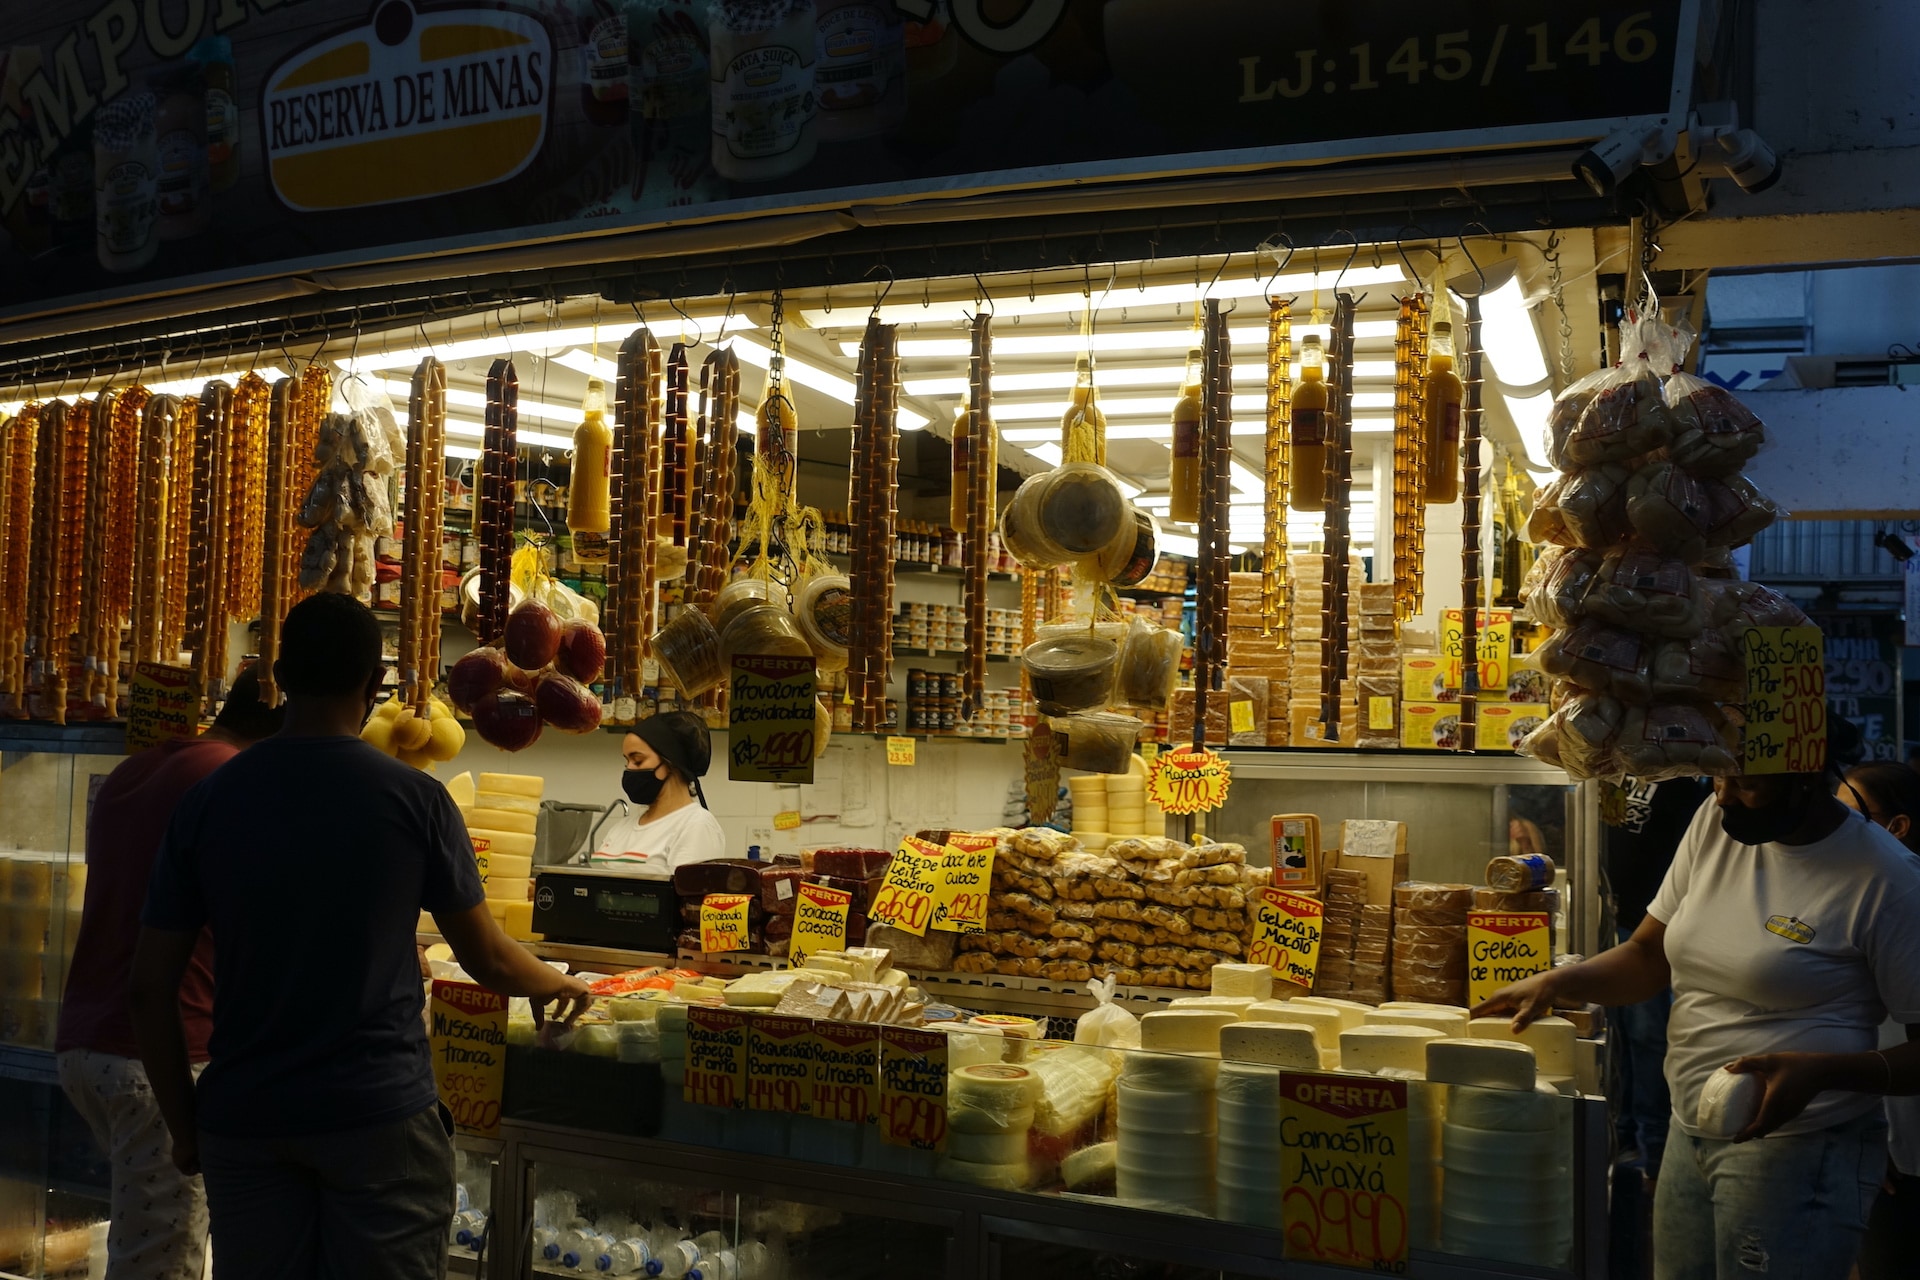 Foto contra a luz de uma barraca de queijos e geleias no Mercado Central de Belo Horizonte, com uma mulher/funcionária atrás do balcão e silhuetas de dois homens do lado de fora.